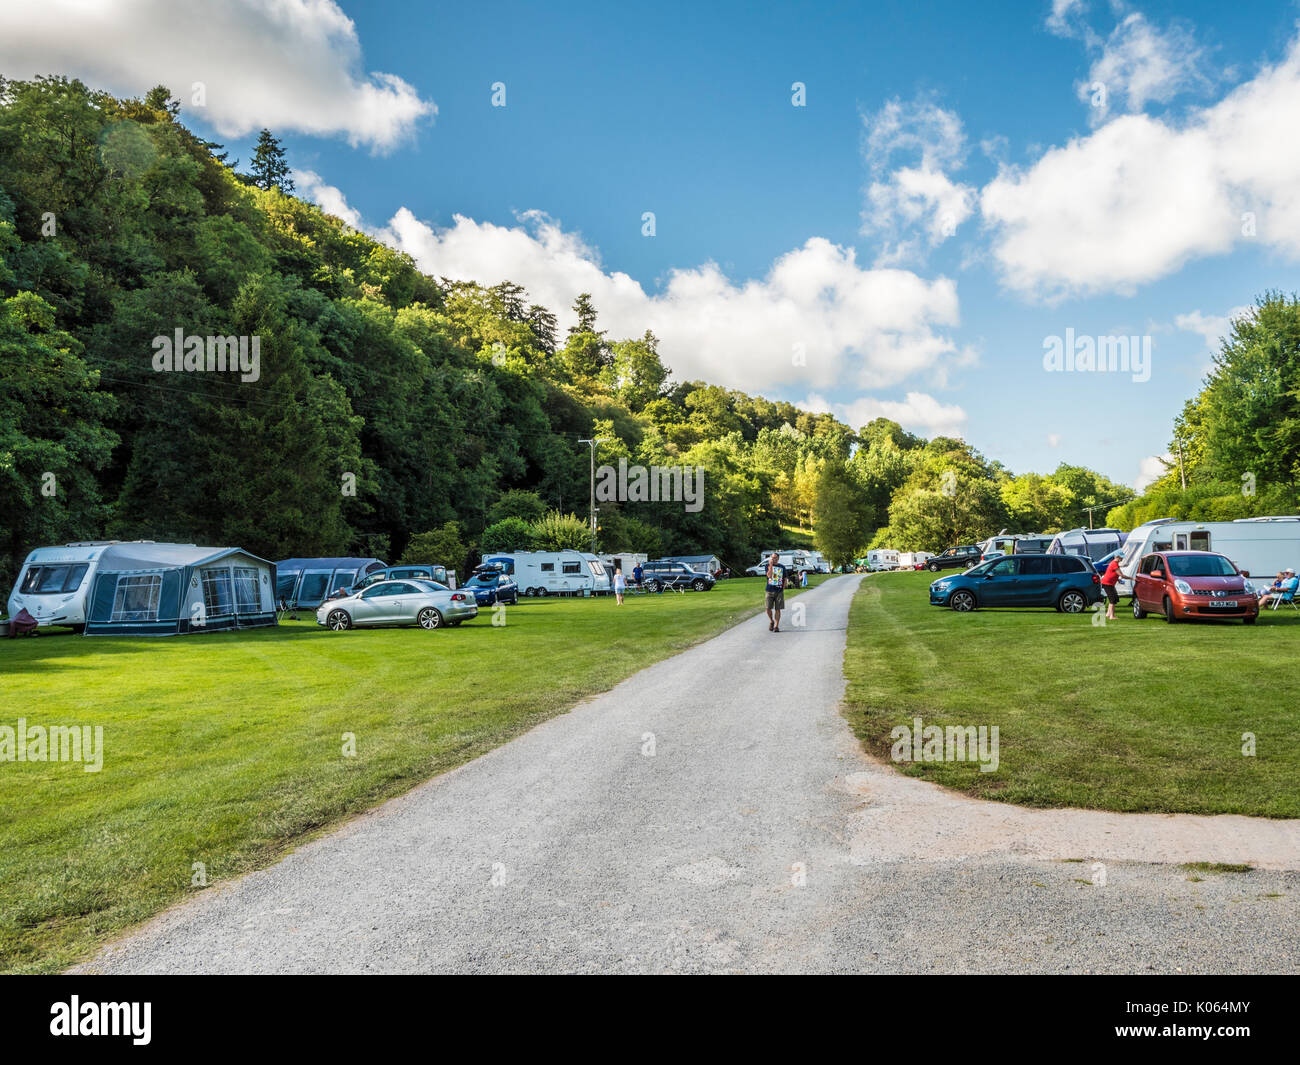 A small caravan site in Exmoor, Somerset. Stock Photo